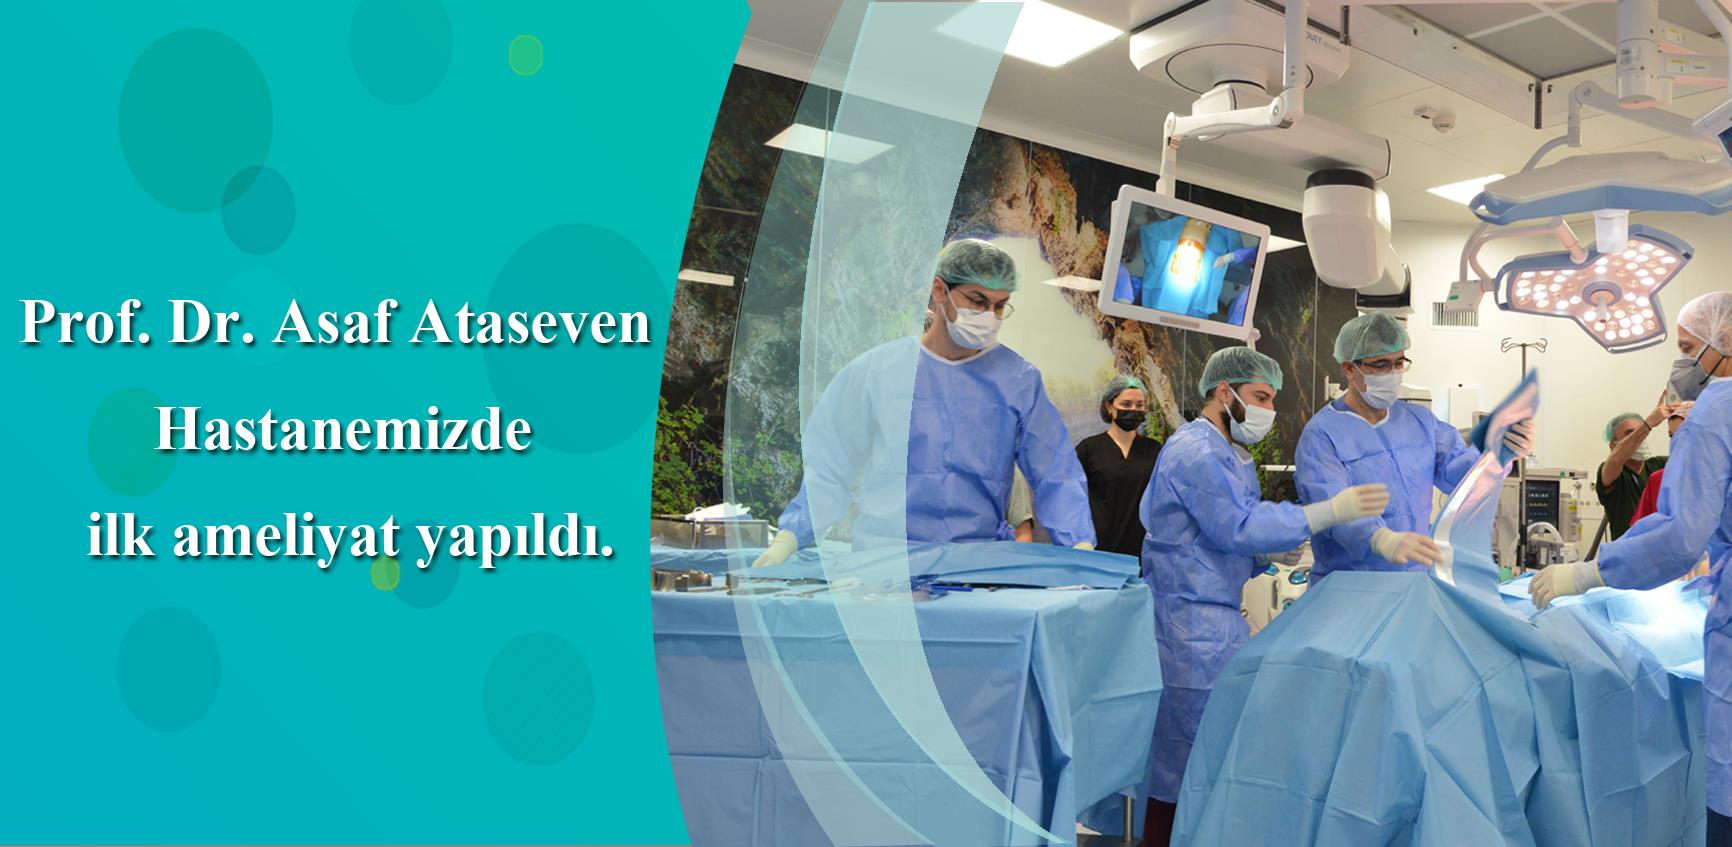 14 Mart Tıp Bayramında Başıbüyük’te bulunan Prof. Dr. Asaf Ataseven Hastanemizde ilk ameliyat yapıldı.